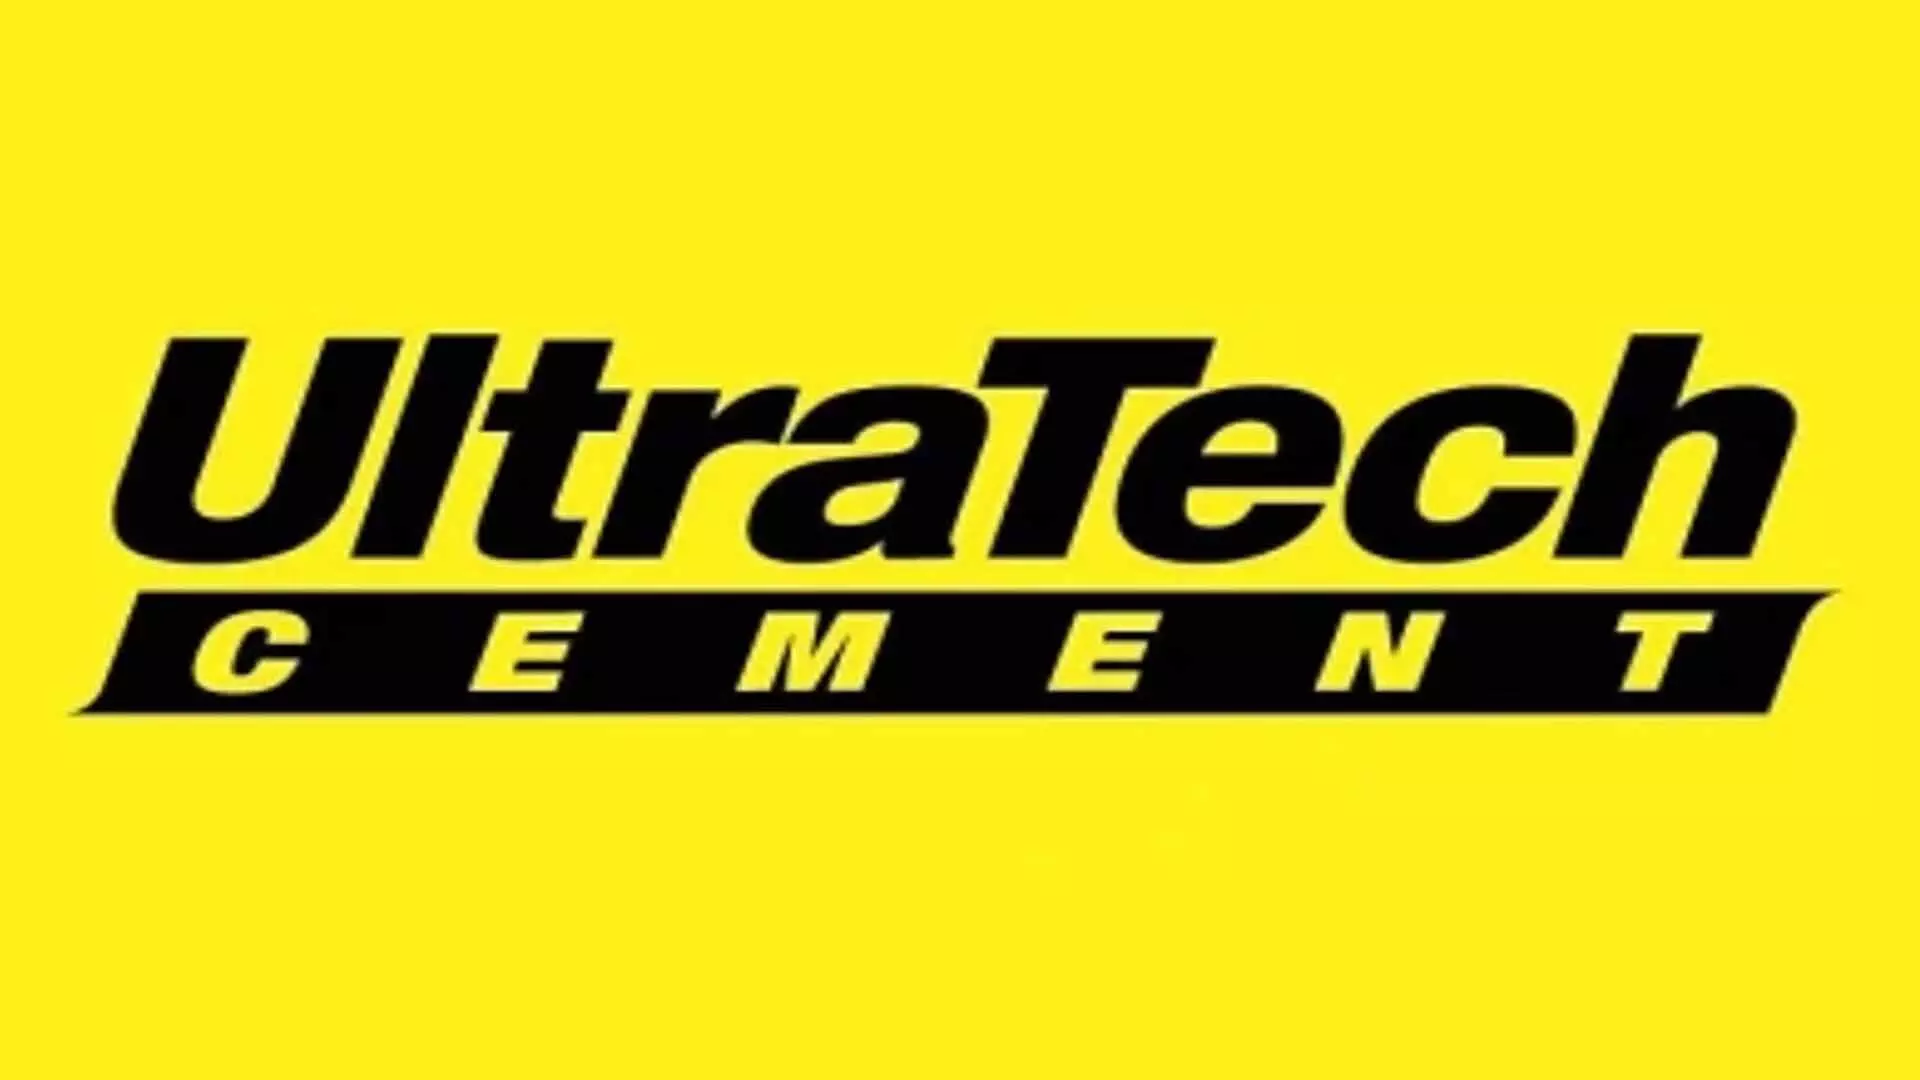 UltraTech बोर्ड इंडिया सीमेंट्स में 32.72 प्रतिशत हिस्सेदारी 3,954 करोड़ रुपये में खरीदेगा